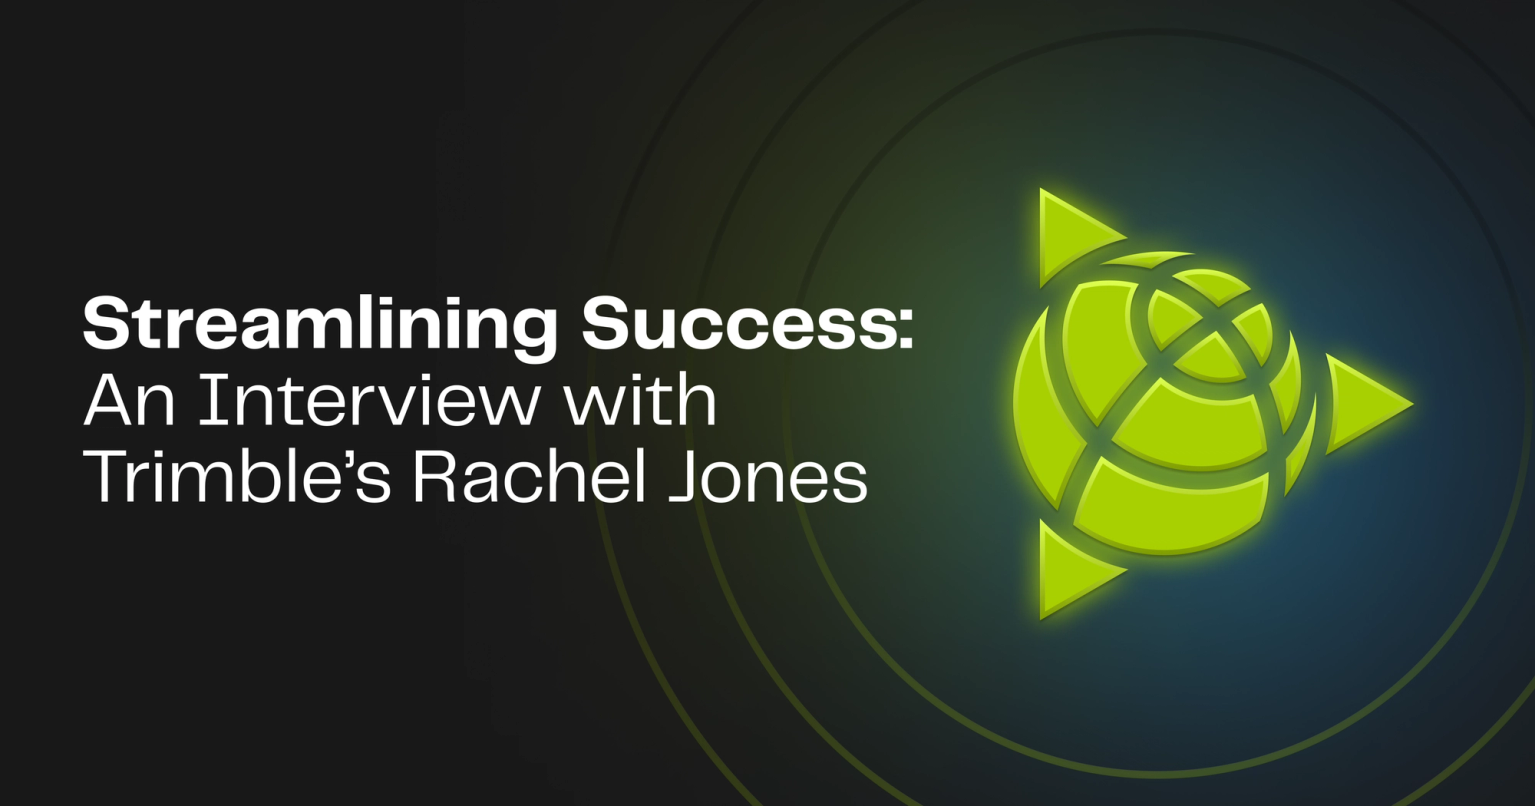 Streamlining Success: An Interview with Trimble's Rachel Jones on Knak